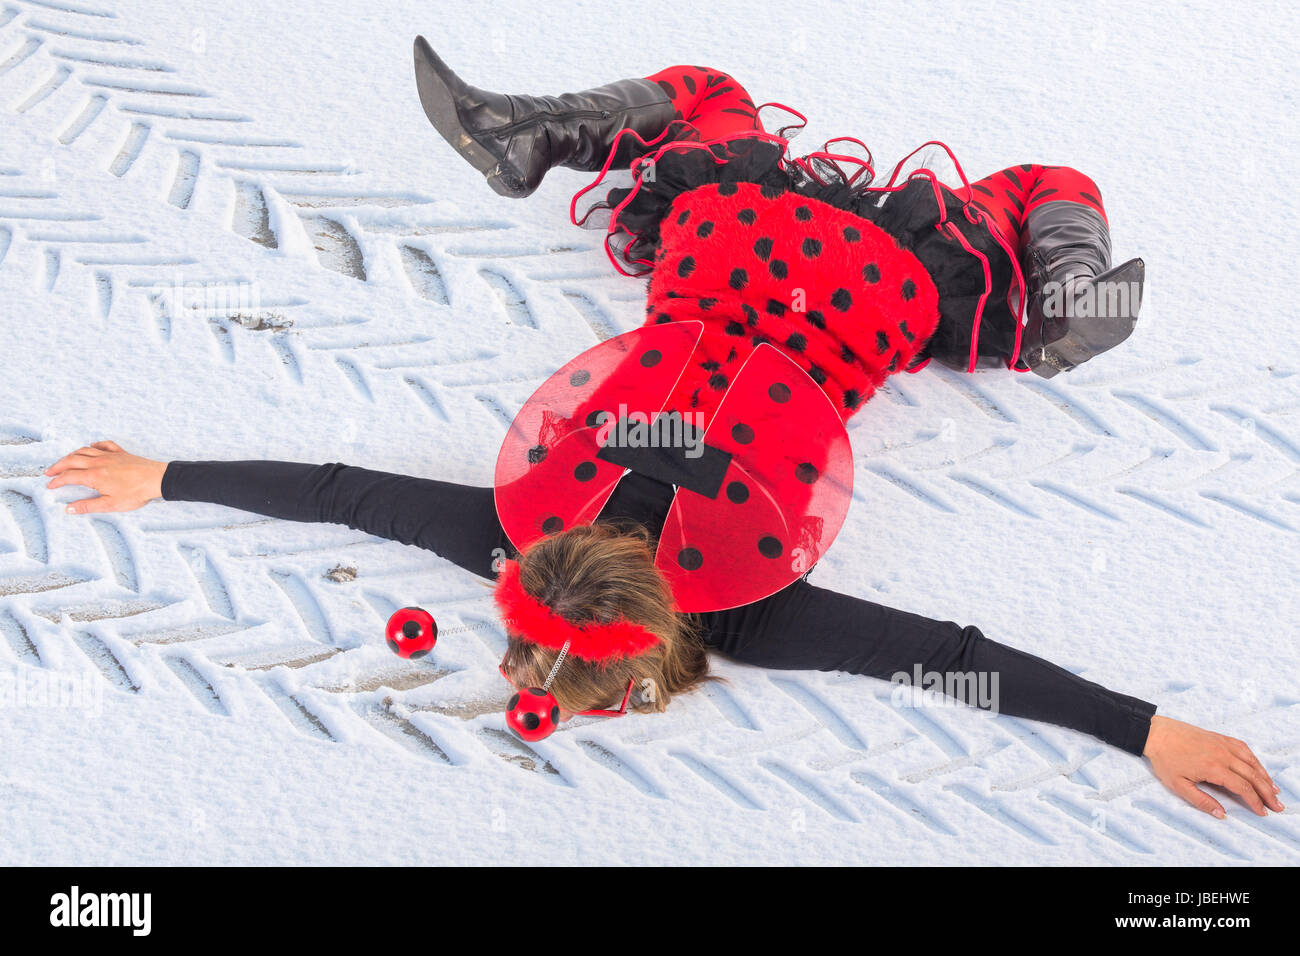 Marienkäfer im Schnee überfahren - Spass Stock Photo